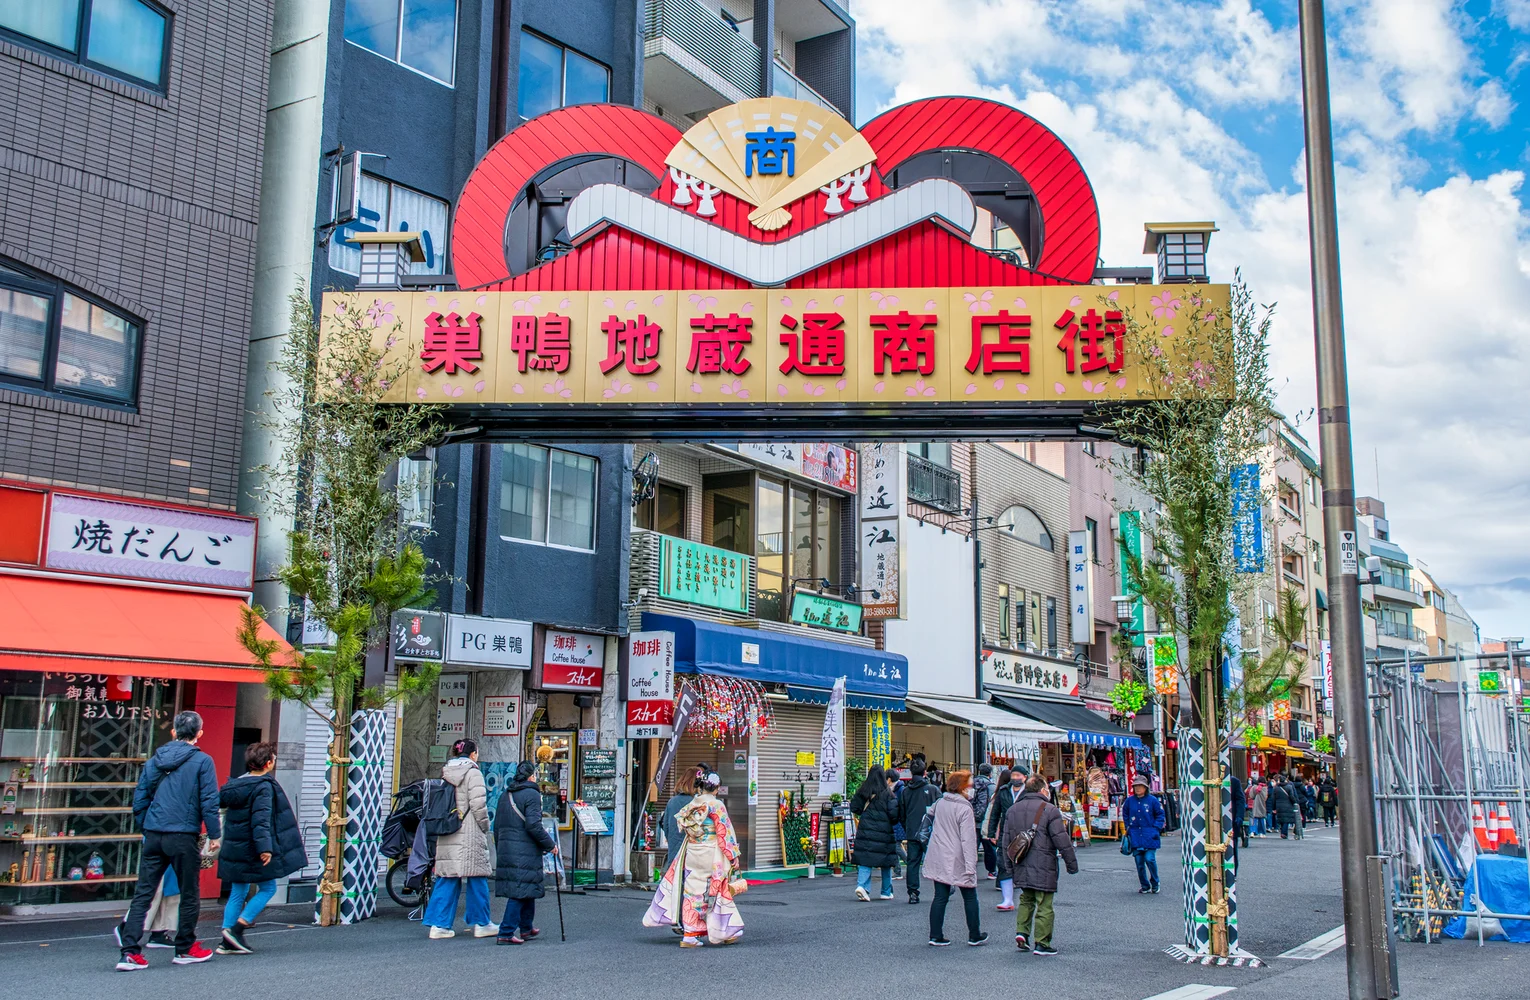 Meet-the-Locals Hidden Gem Food Tour in Sugamo, Tokyo